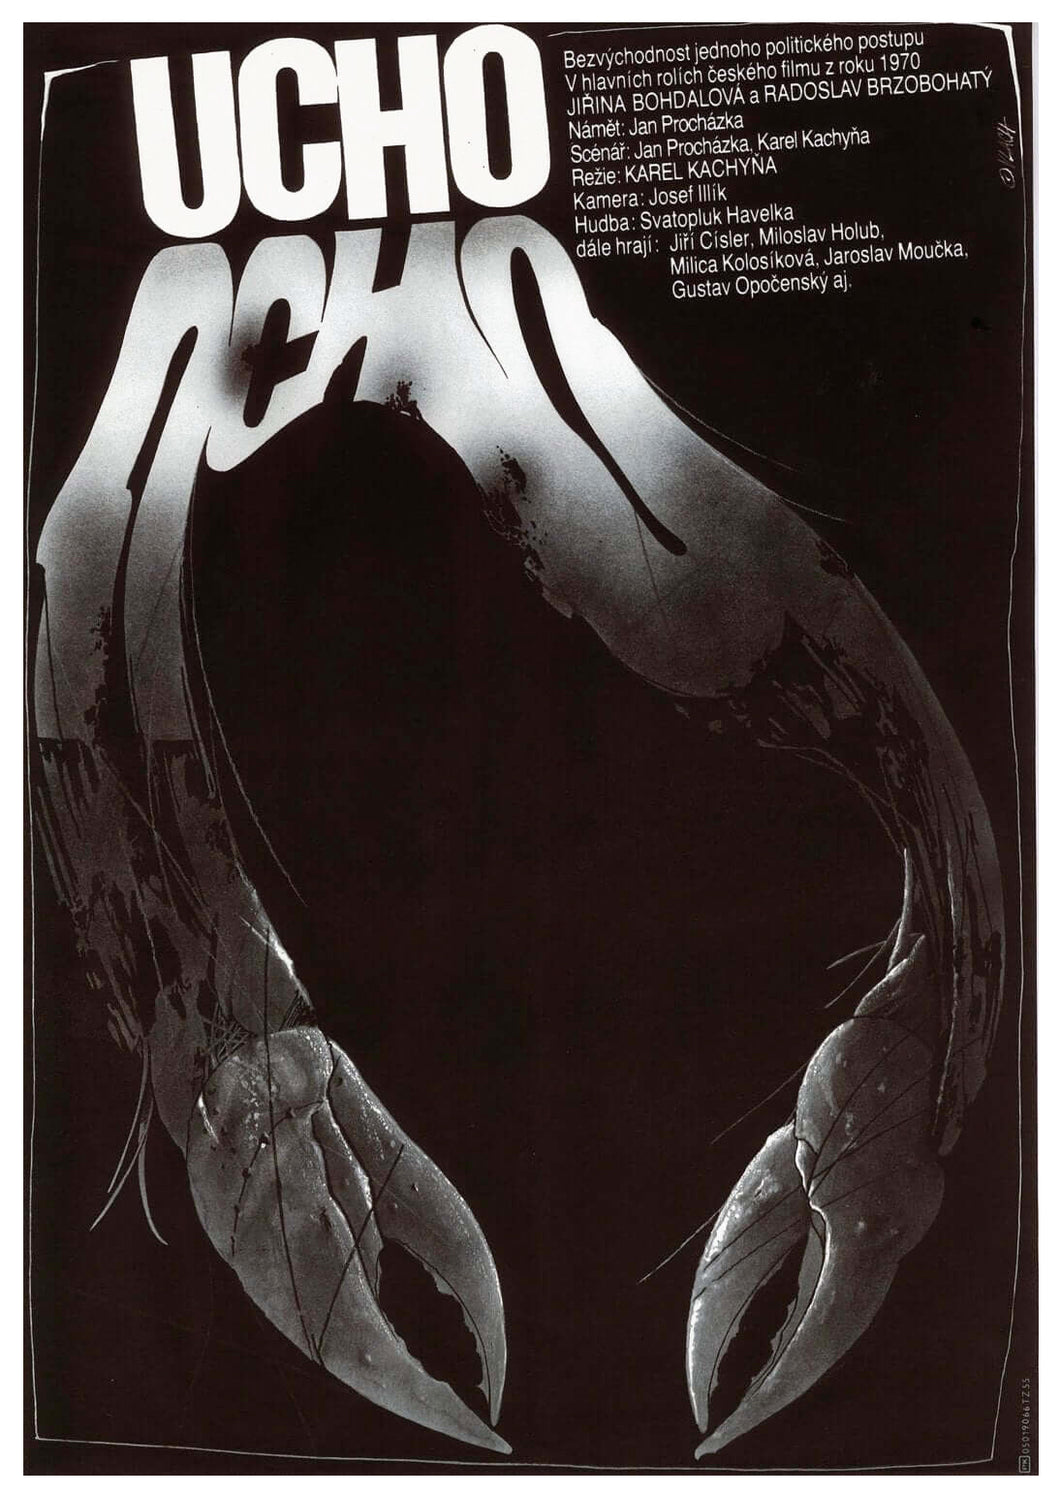 THE EAR (Ucho) Czech Poster